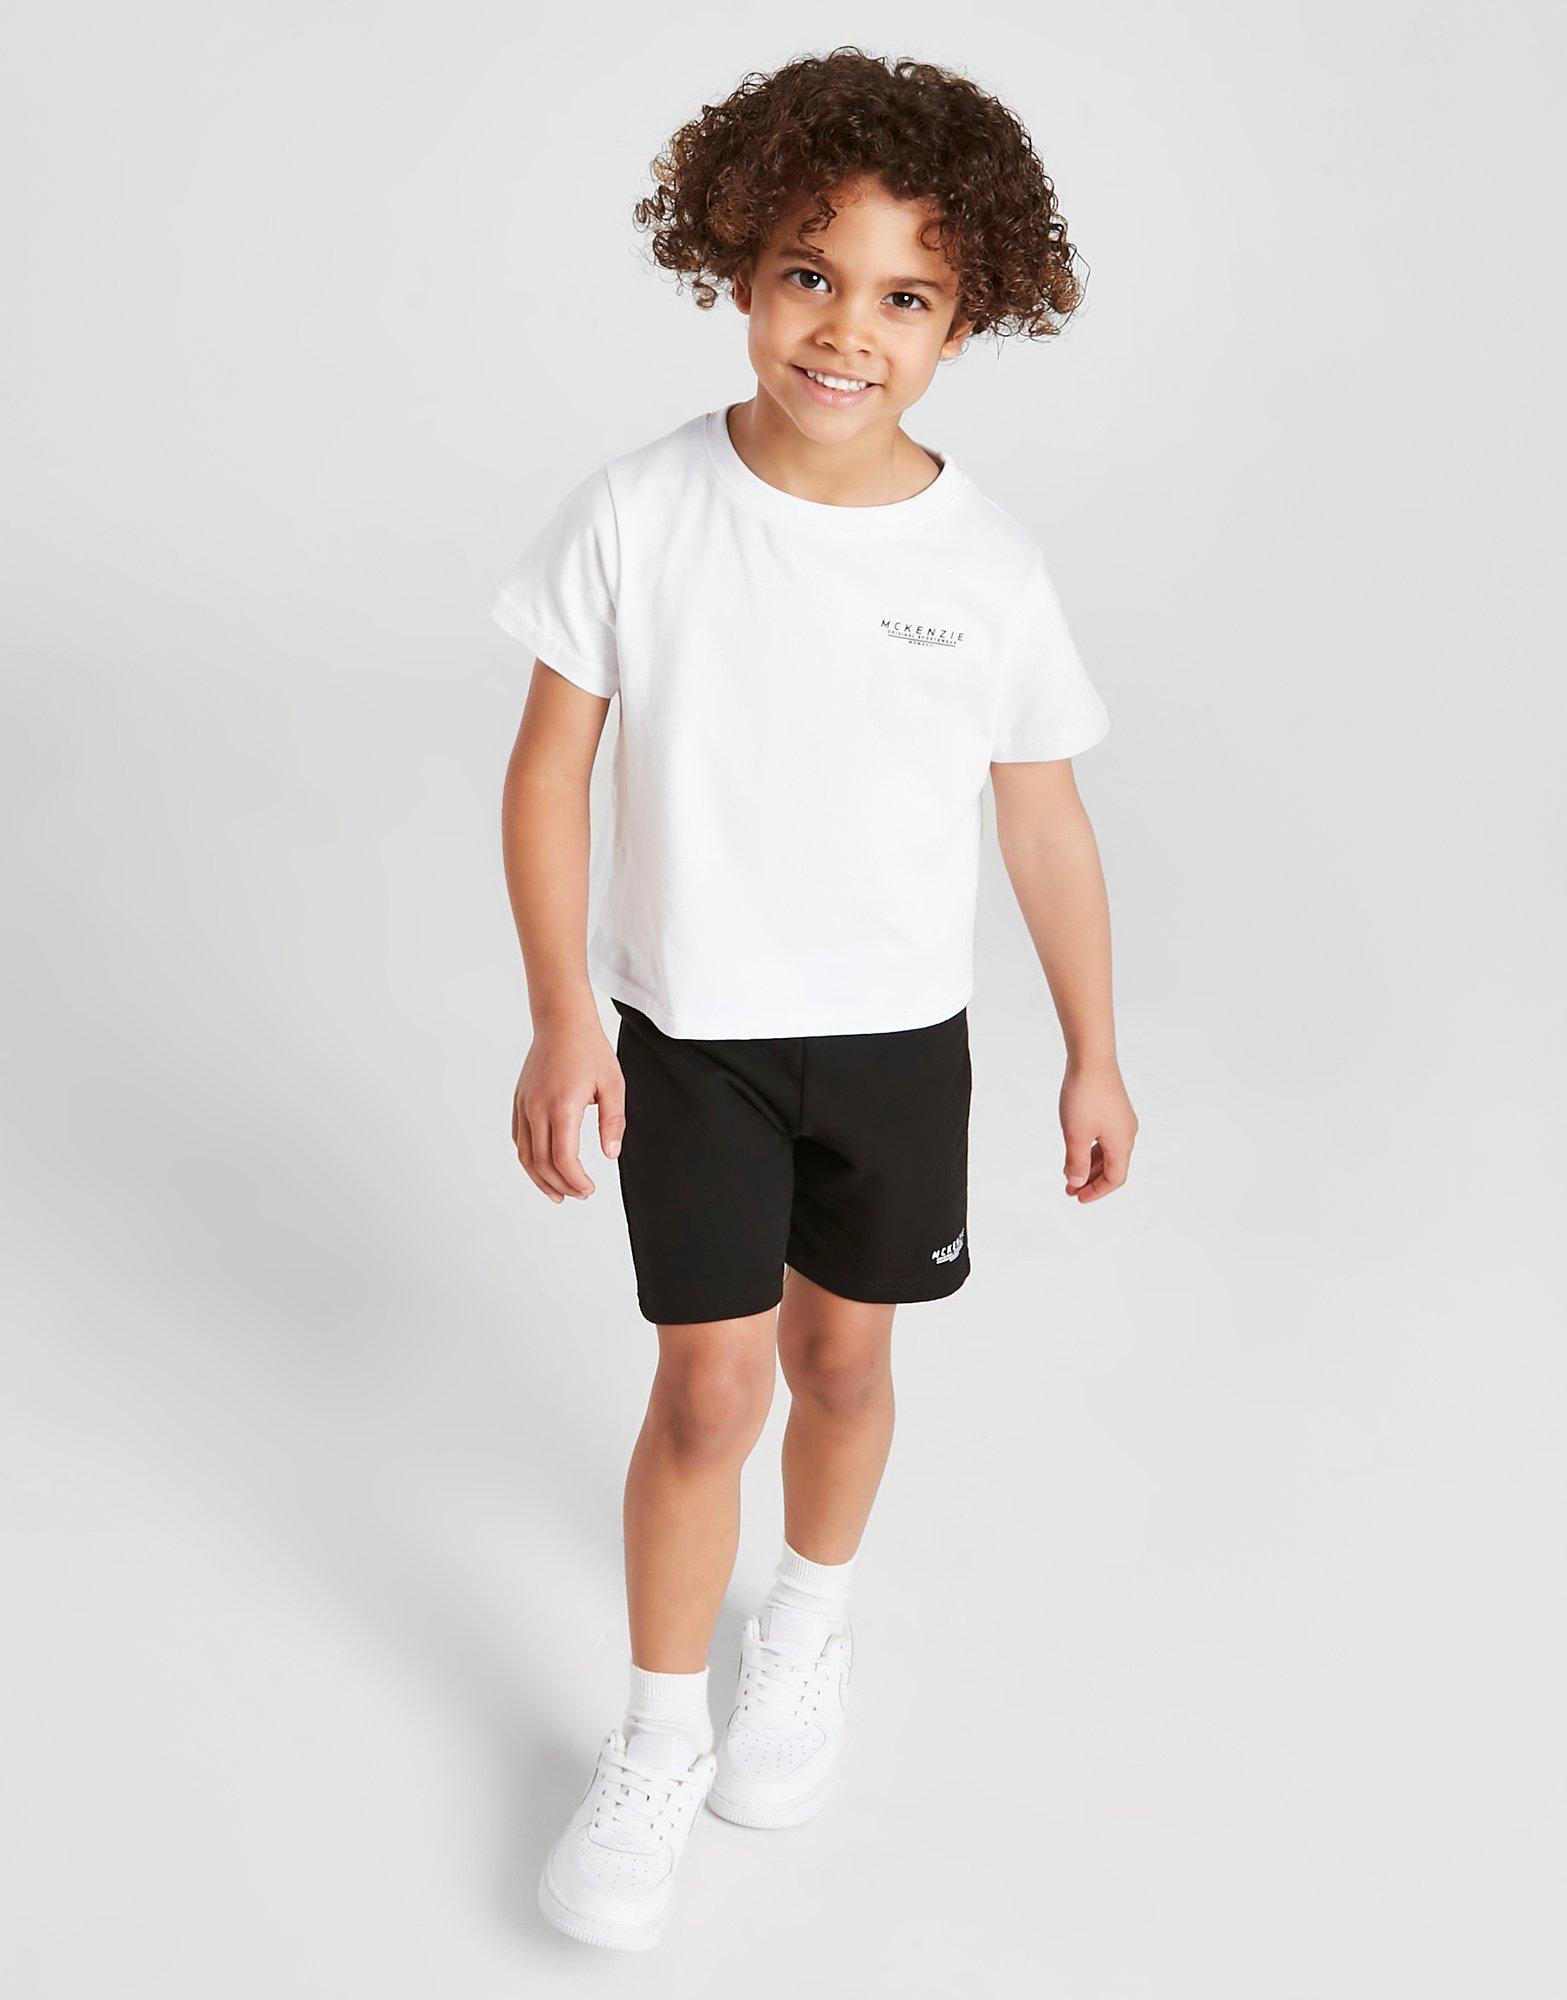 Domyos T-shirt Black 9Y discount 73% KIDS FASHION Shirts & T-shirts Sports 